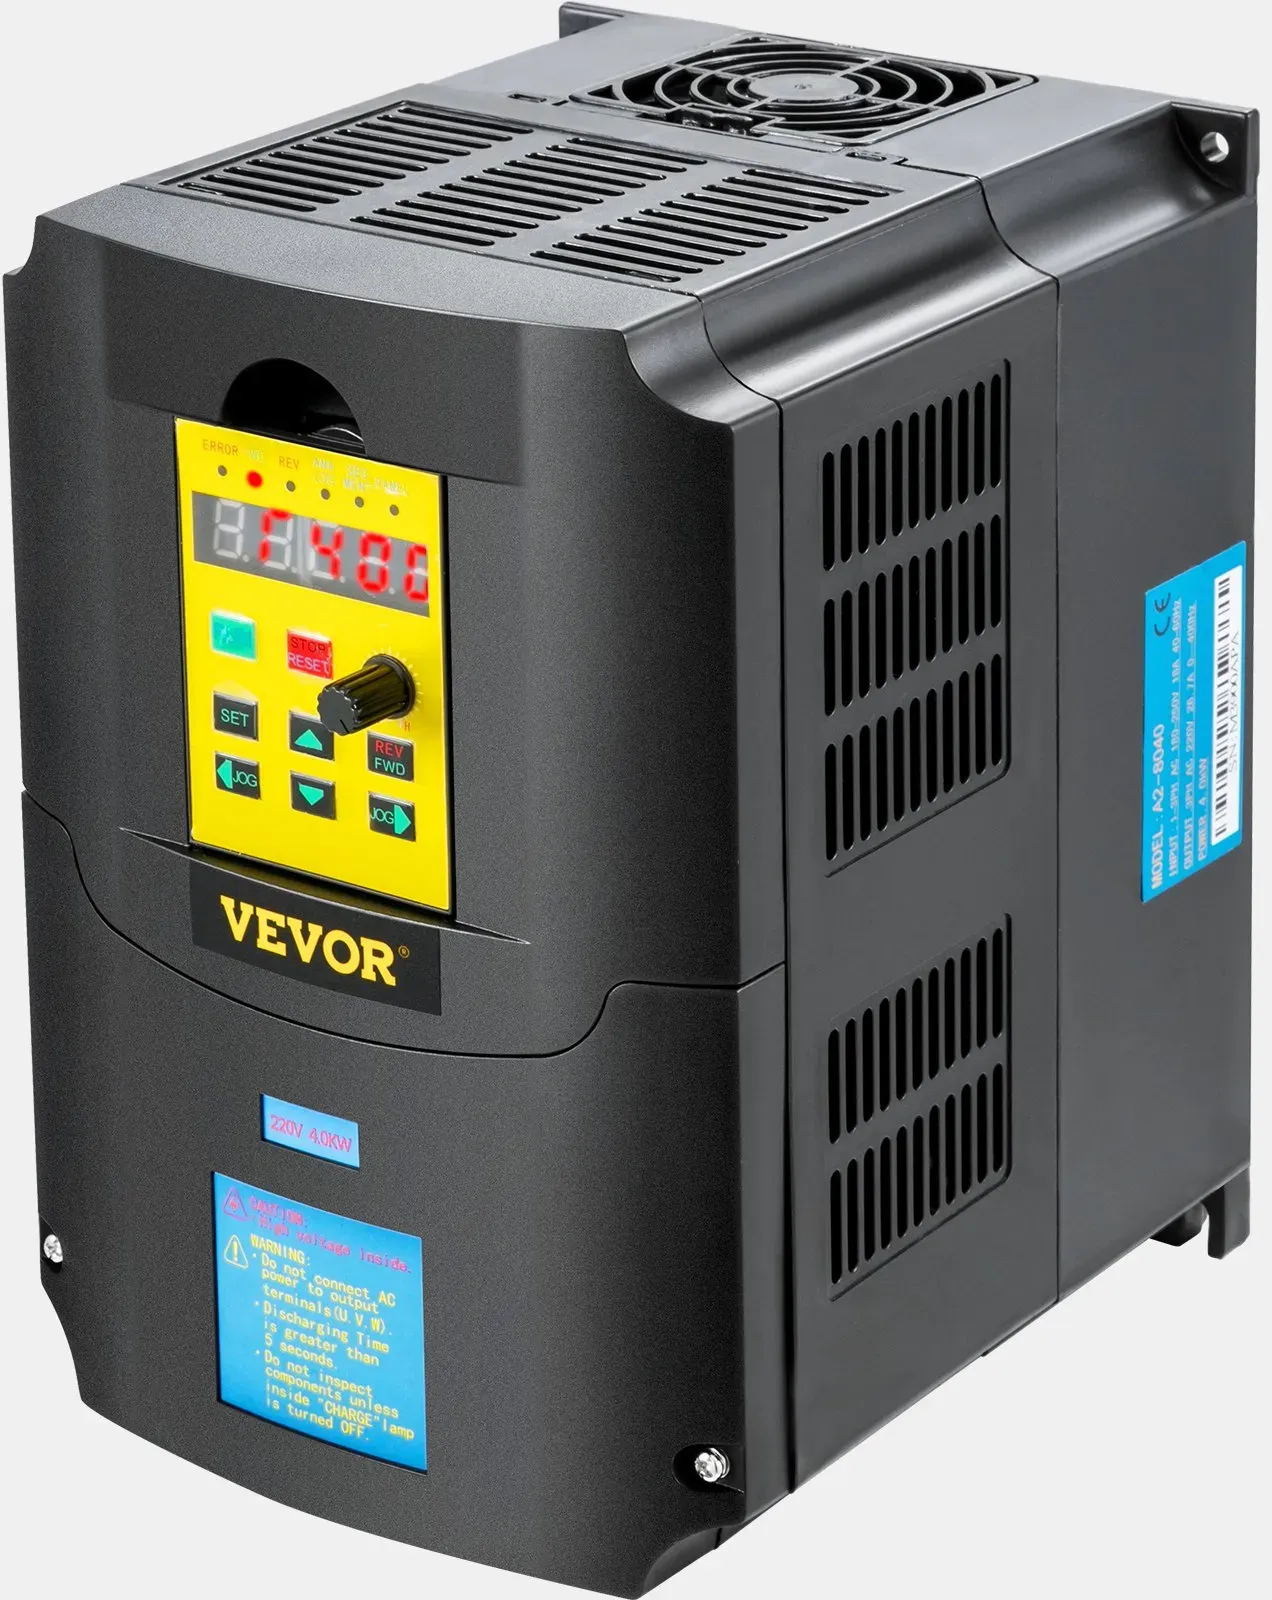 VEVOR Frequenzumrichter Vfd 220 V 4 kW 5,5 Ps VFD-Wandler variabler Umrichter steuerbare Geschwindigkeit Mehrfachschutz Luftfeuchtigkeit